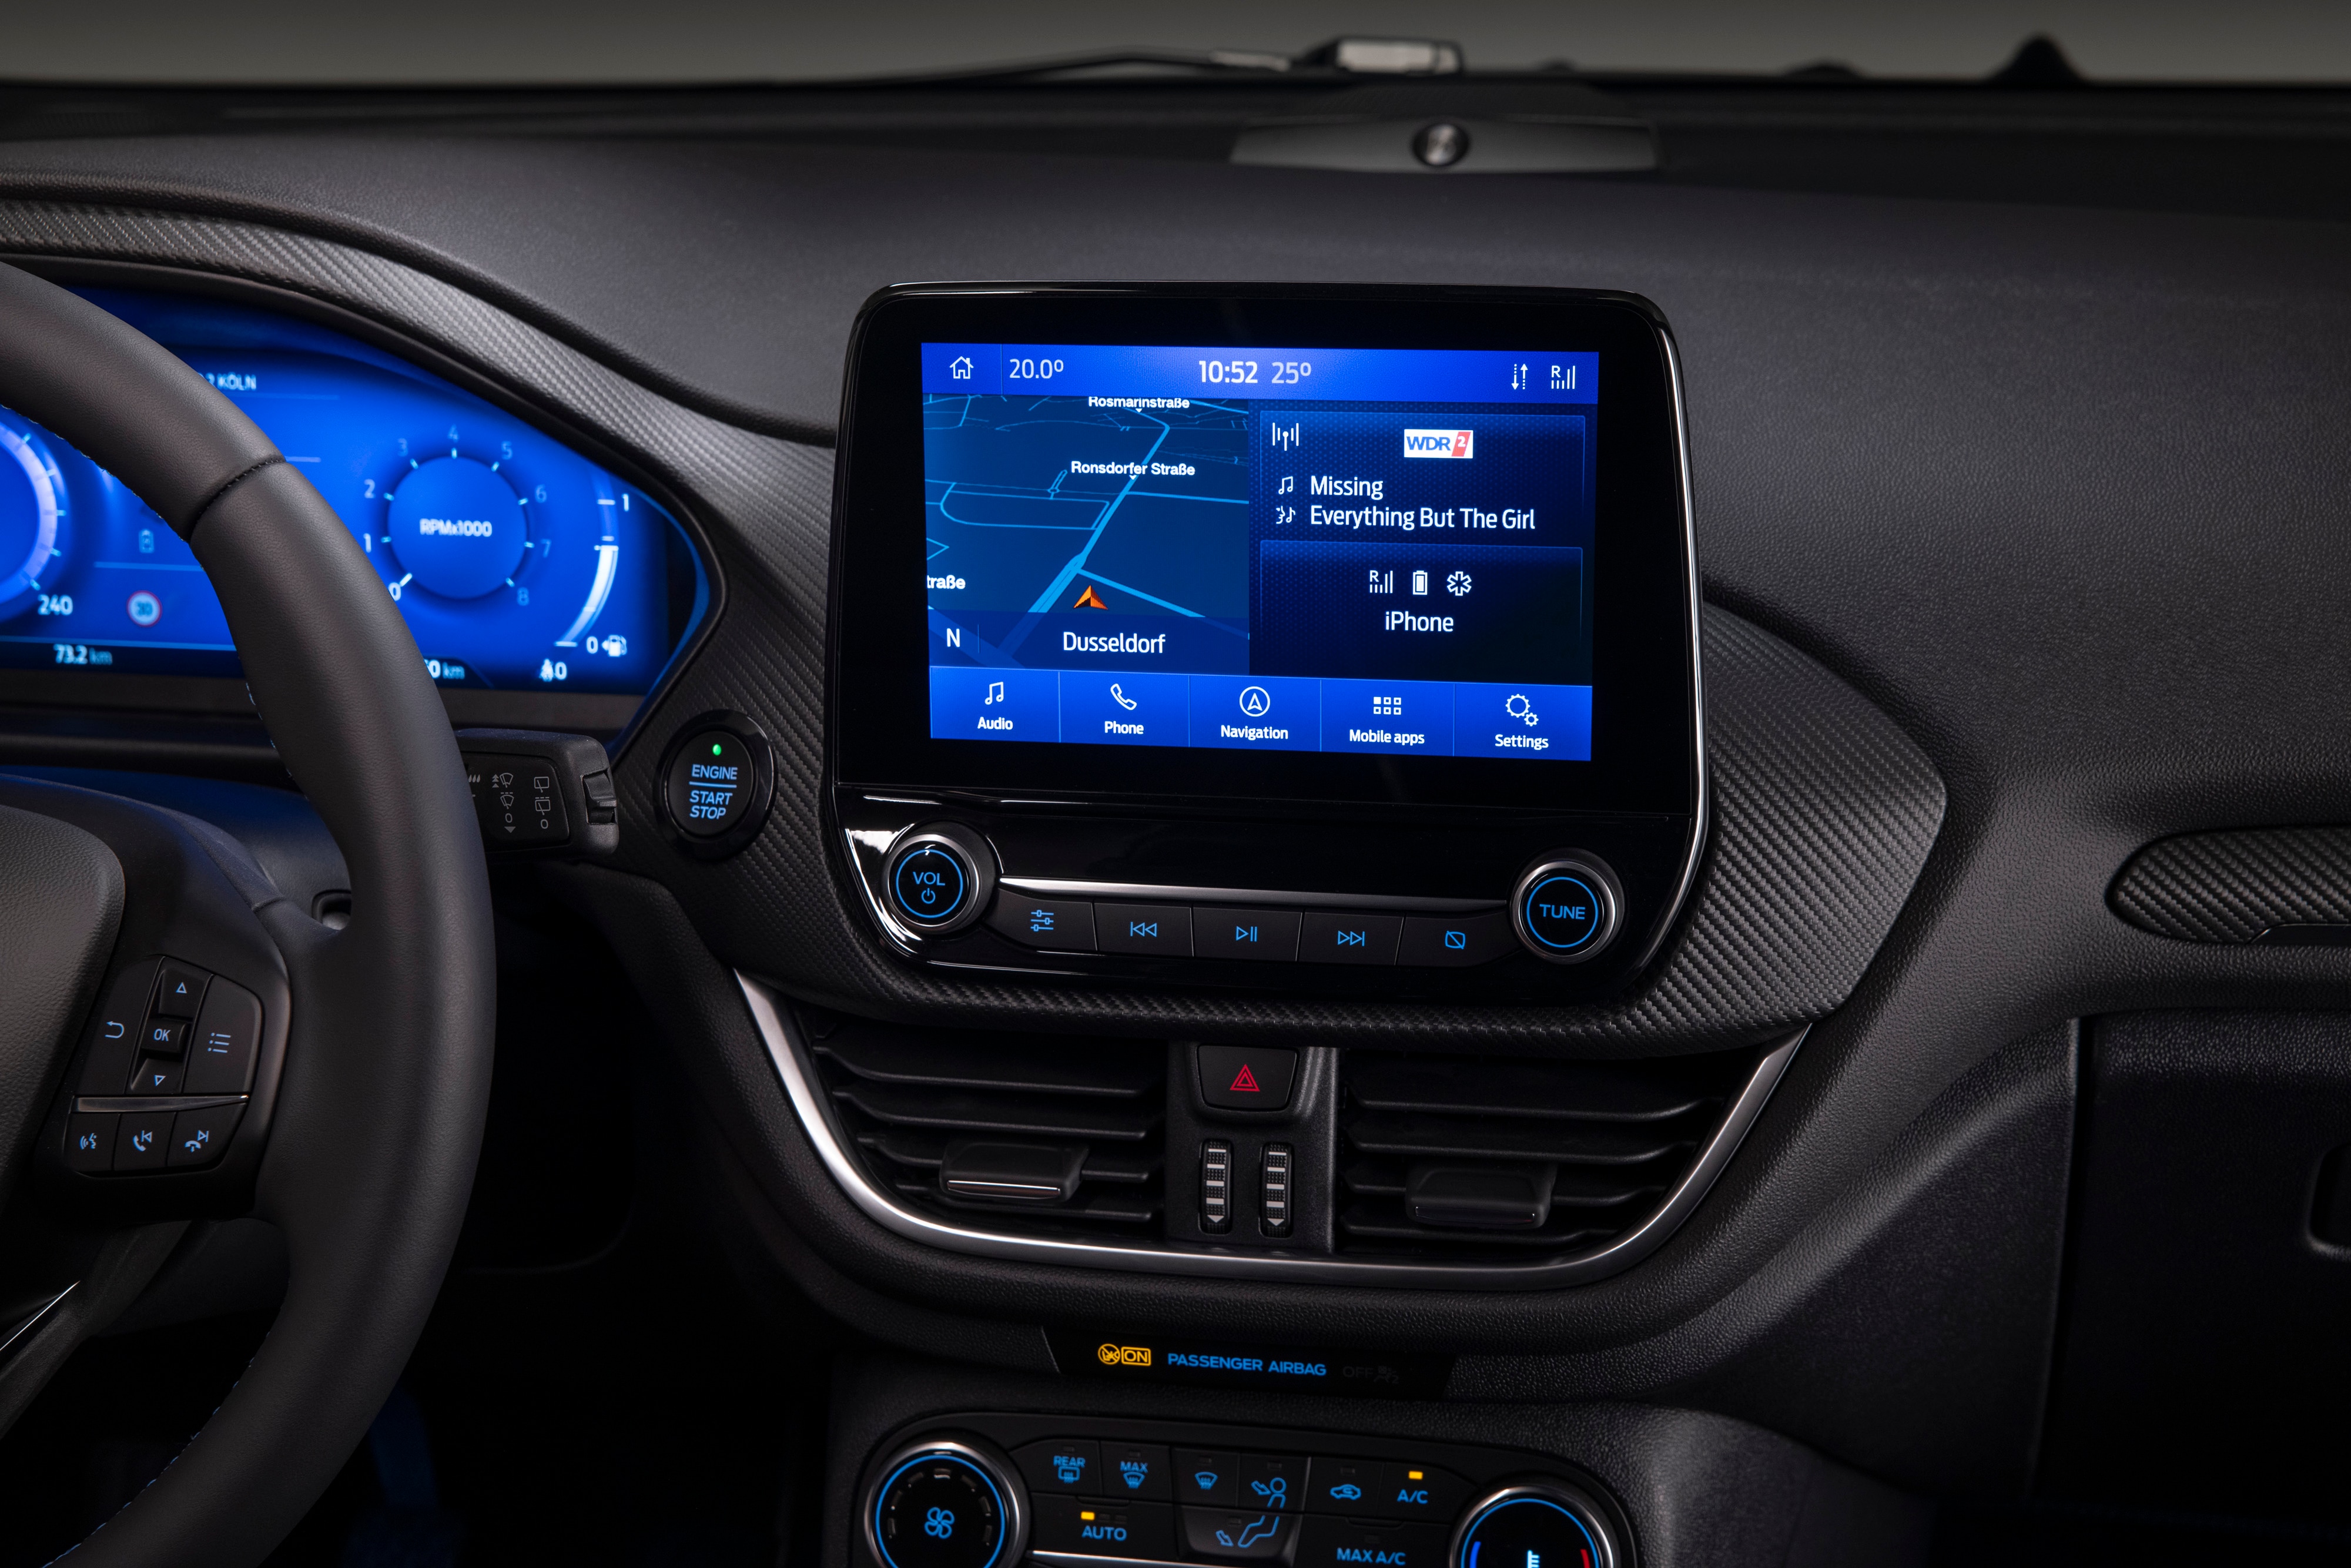 Der neue Ford Fiesta: Der technologisch fortschrittlichste